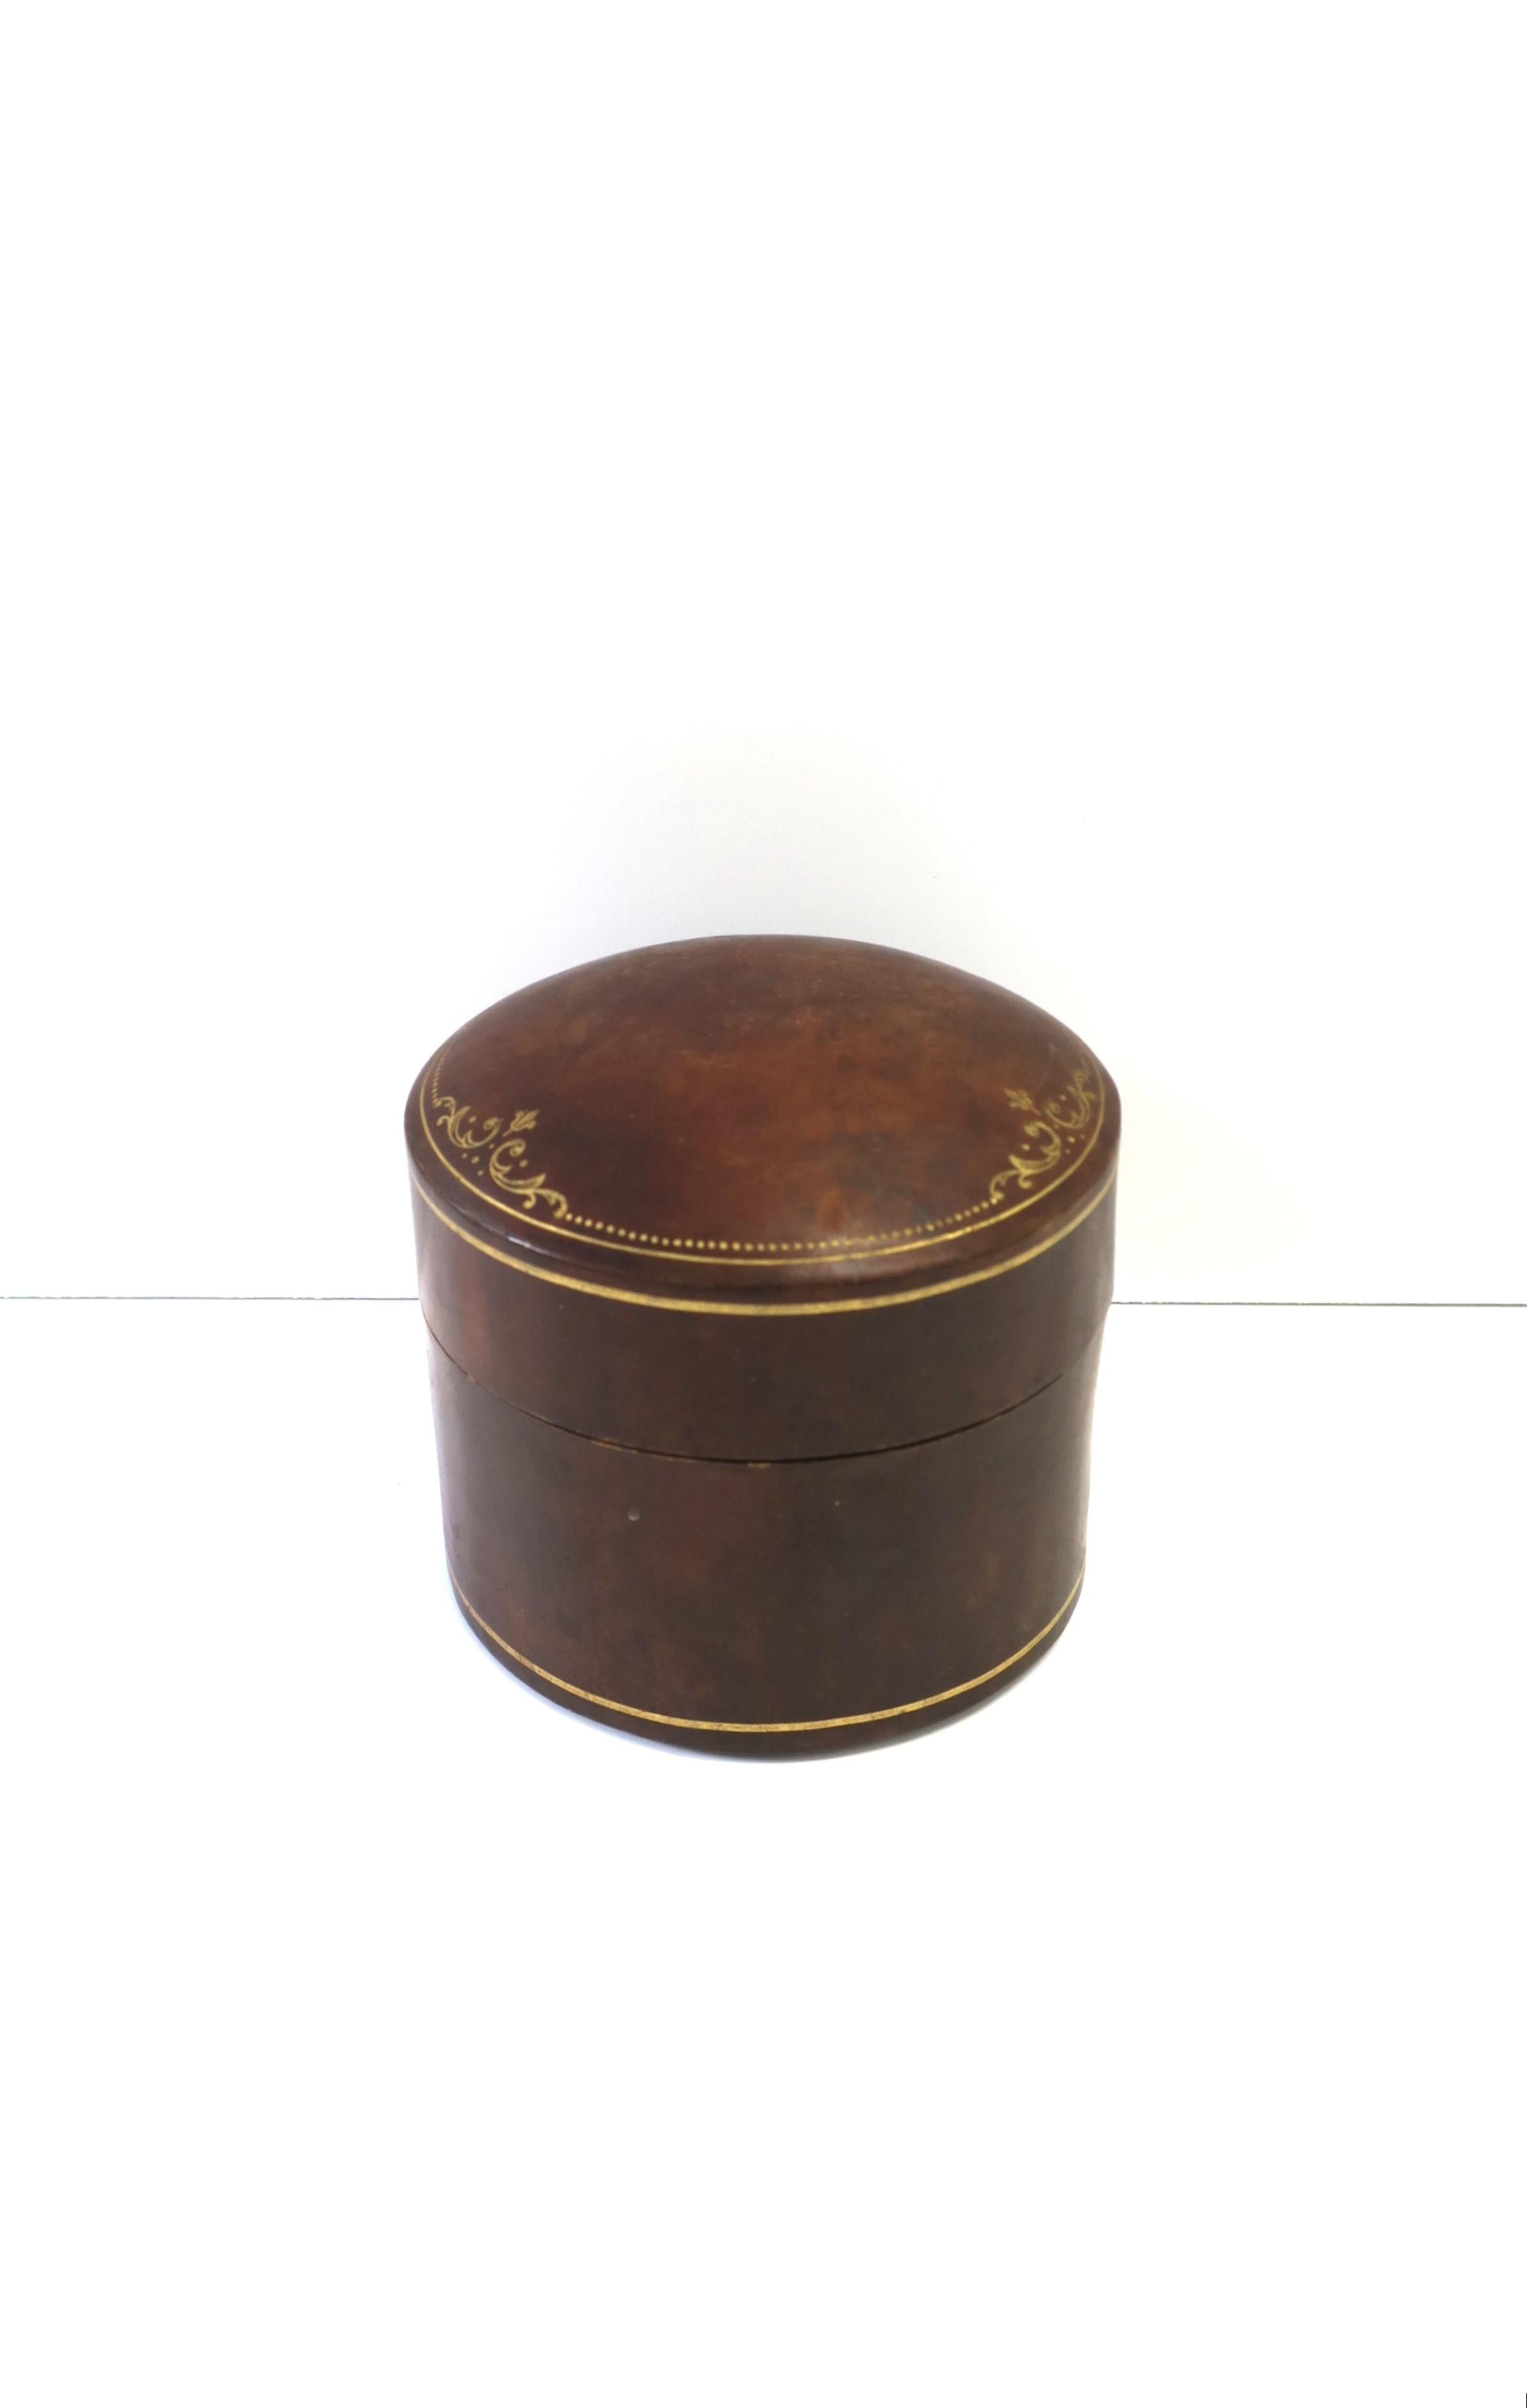 Boîte à bijoux cylindrique italienne en cuir brun avec gaufrage en or, vers le milieu du XXe siècle, Italie. La boîte peut contenir des bijoux ou d'autres objets sur un bureau, une coiffeuse, un dressing, etc. Dimensions : 4